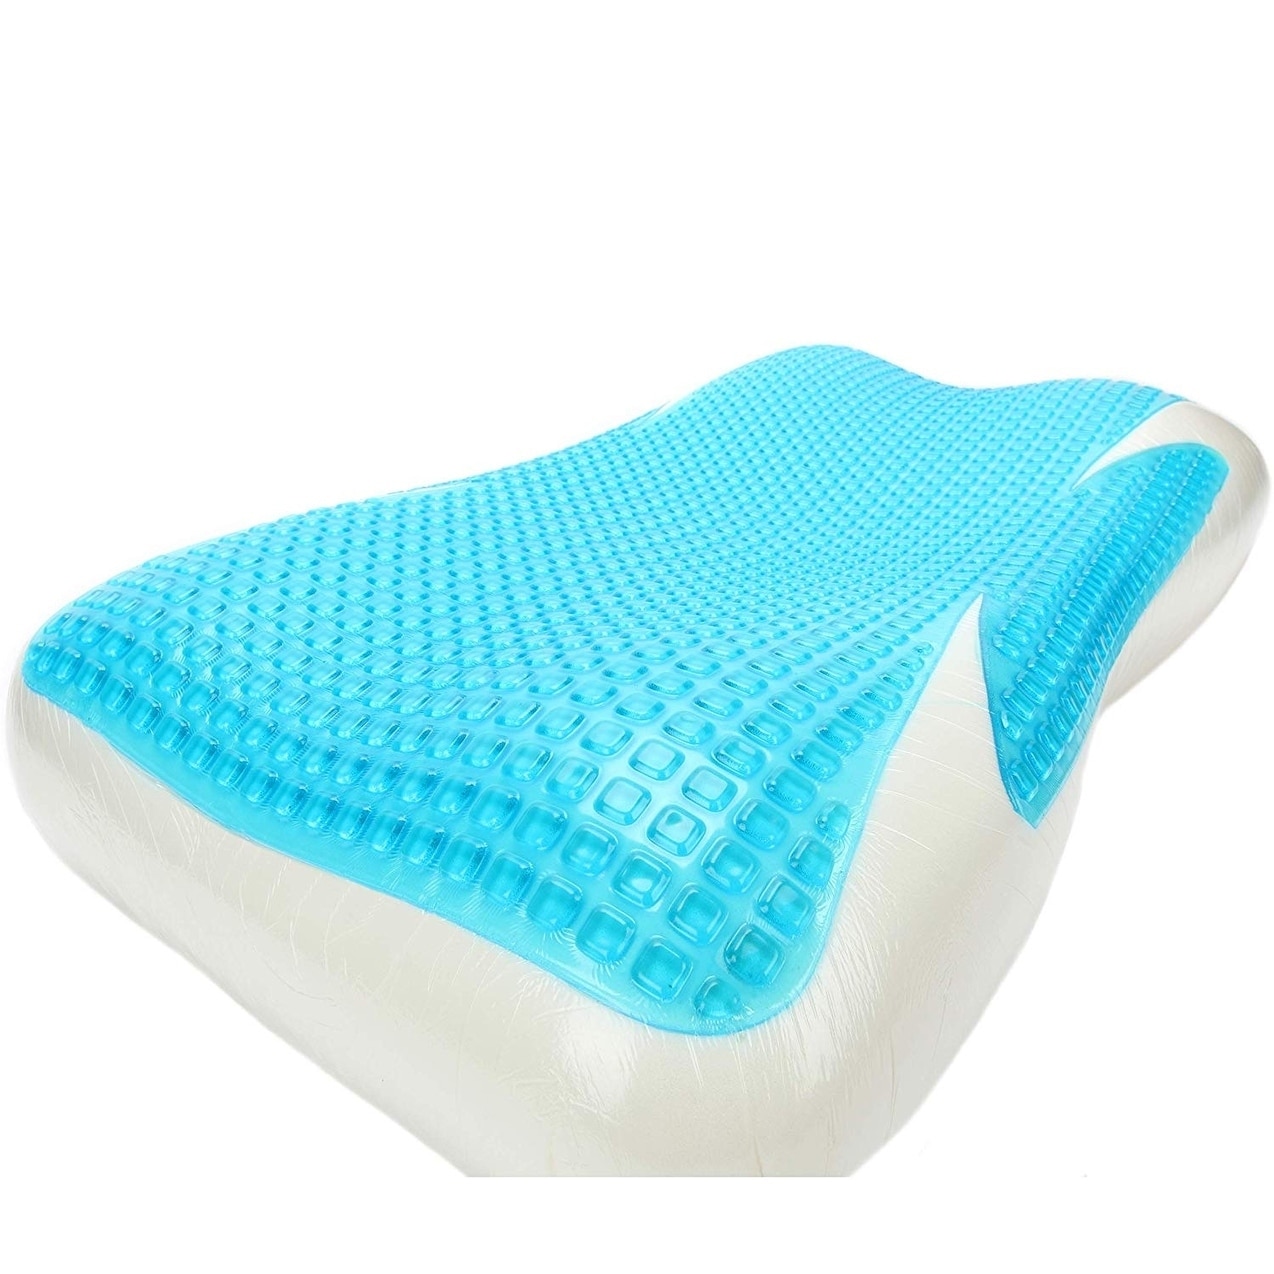 cool gel pillow